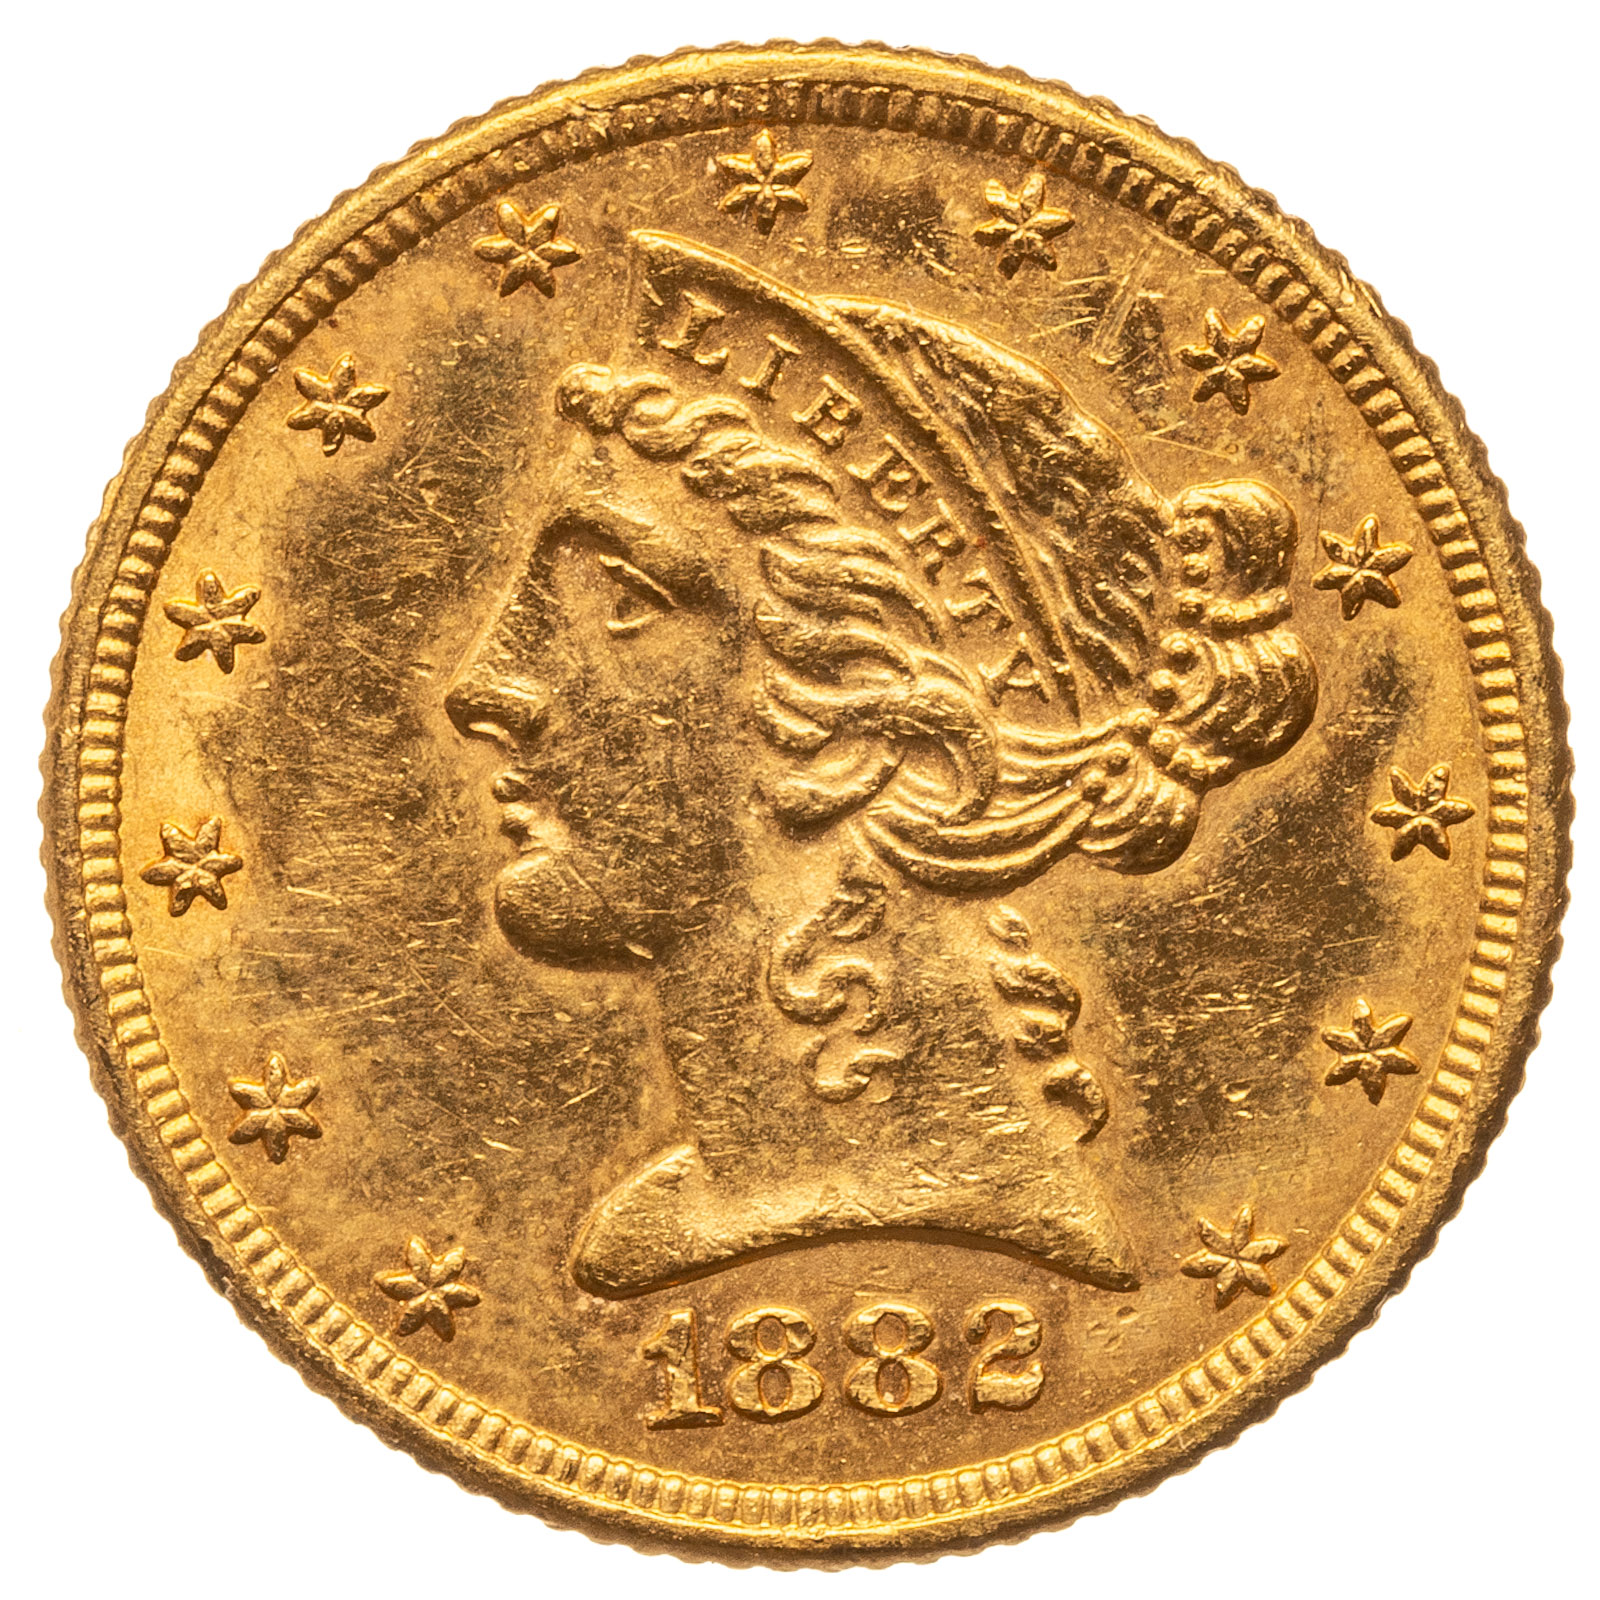 1882 5 LIBERTY GOLD HALF EAGLE 2eae07